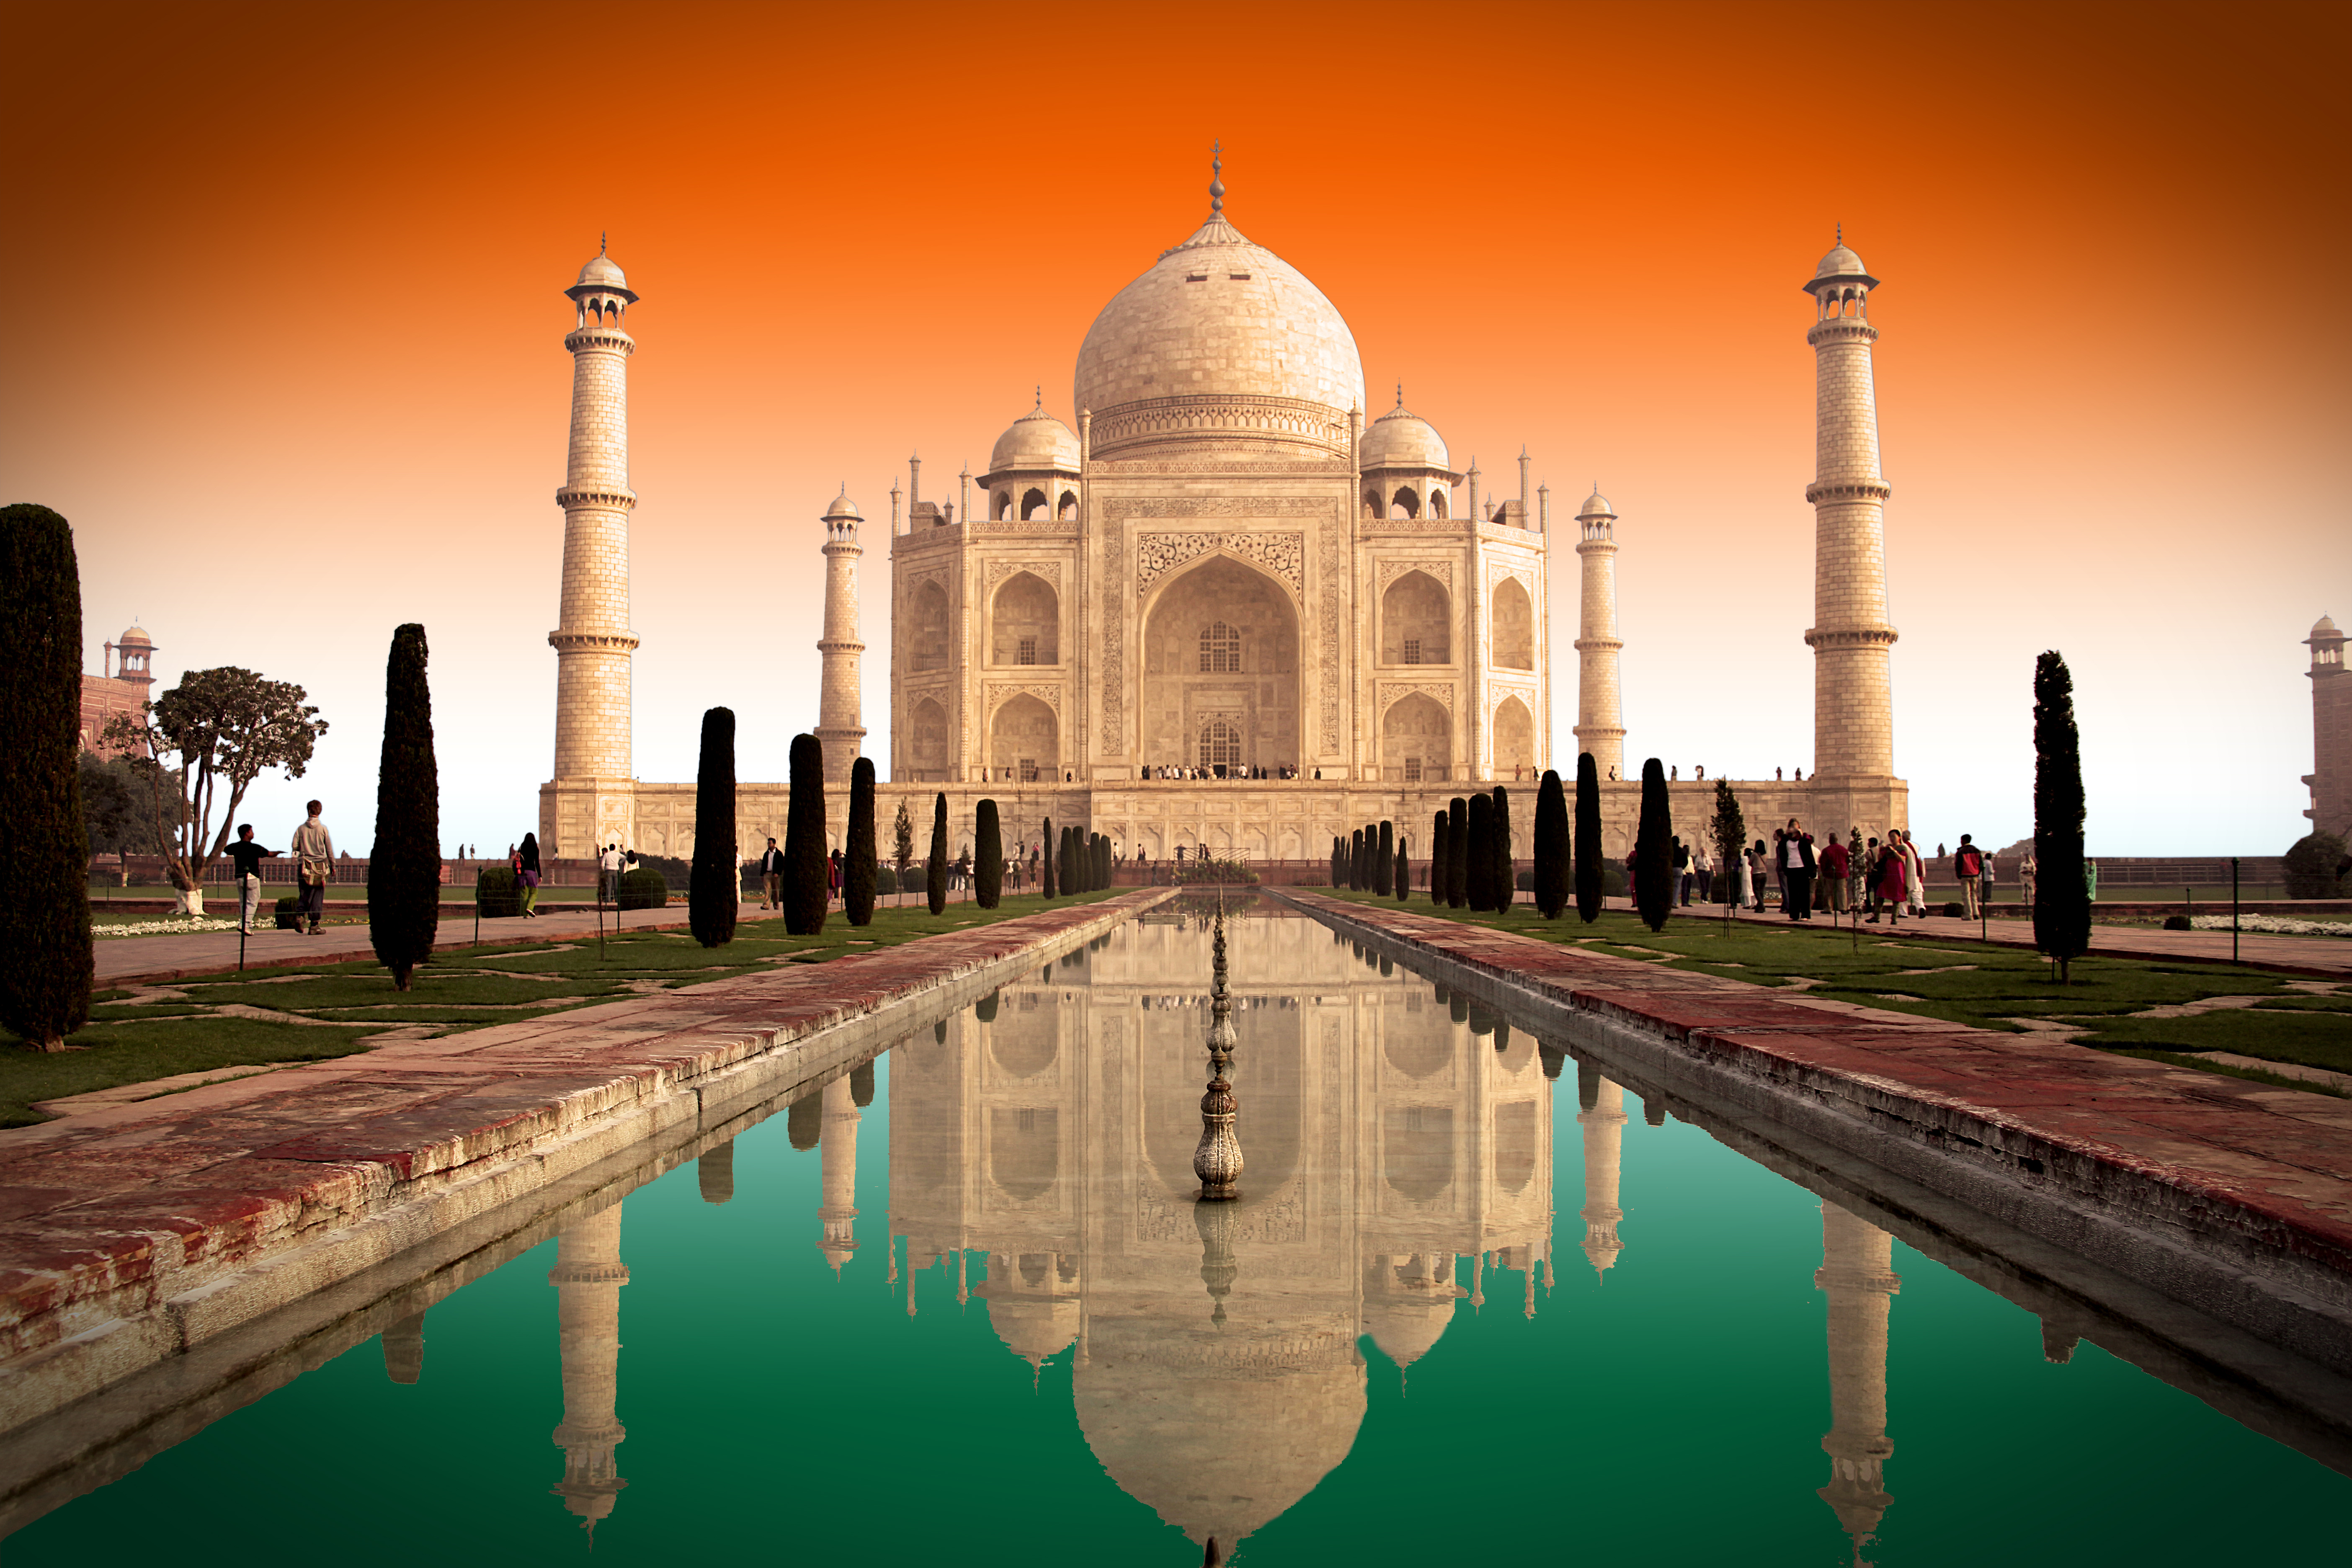 5616px x 3744px - Taj Mahal: The Jewel of Muslim Art in India - IslamiCity